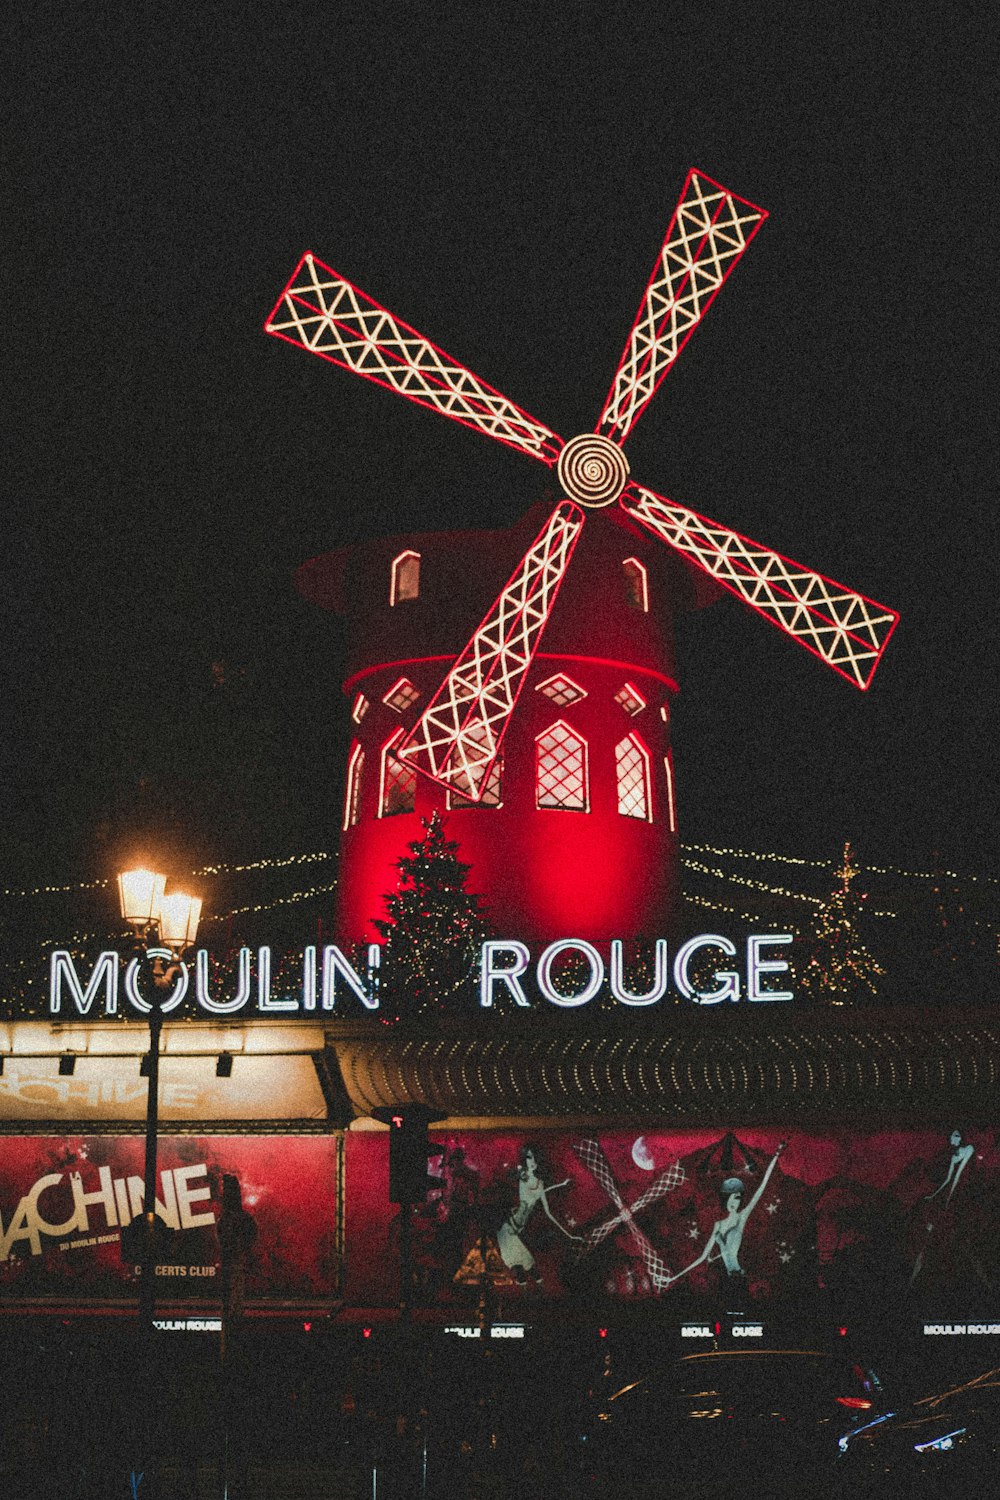 Taberna del Moulin Rouge